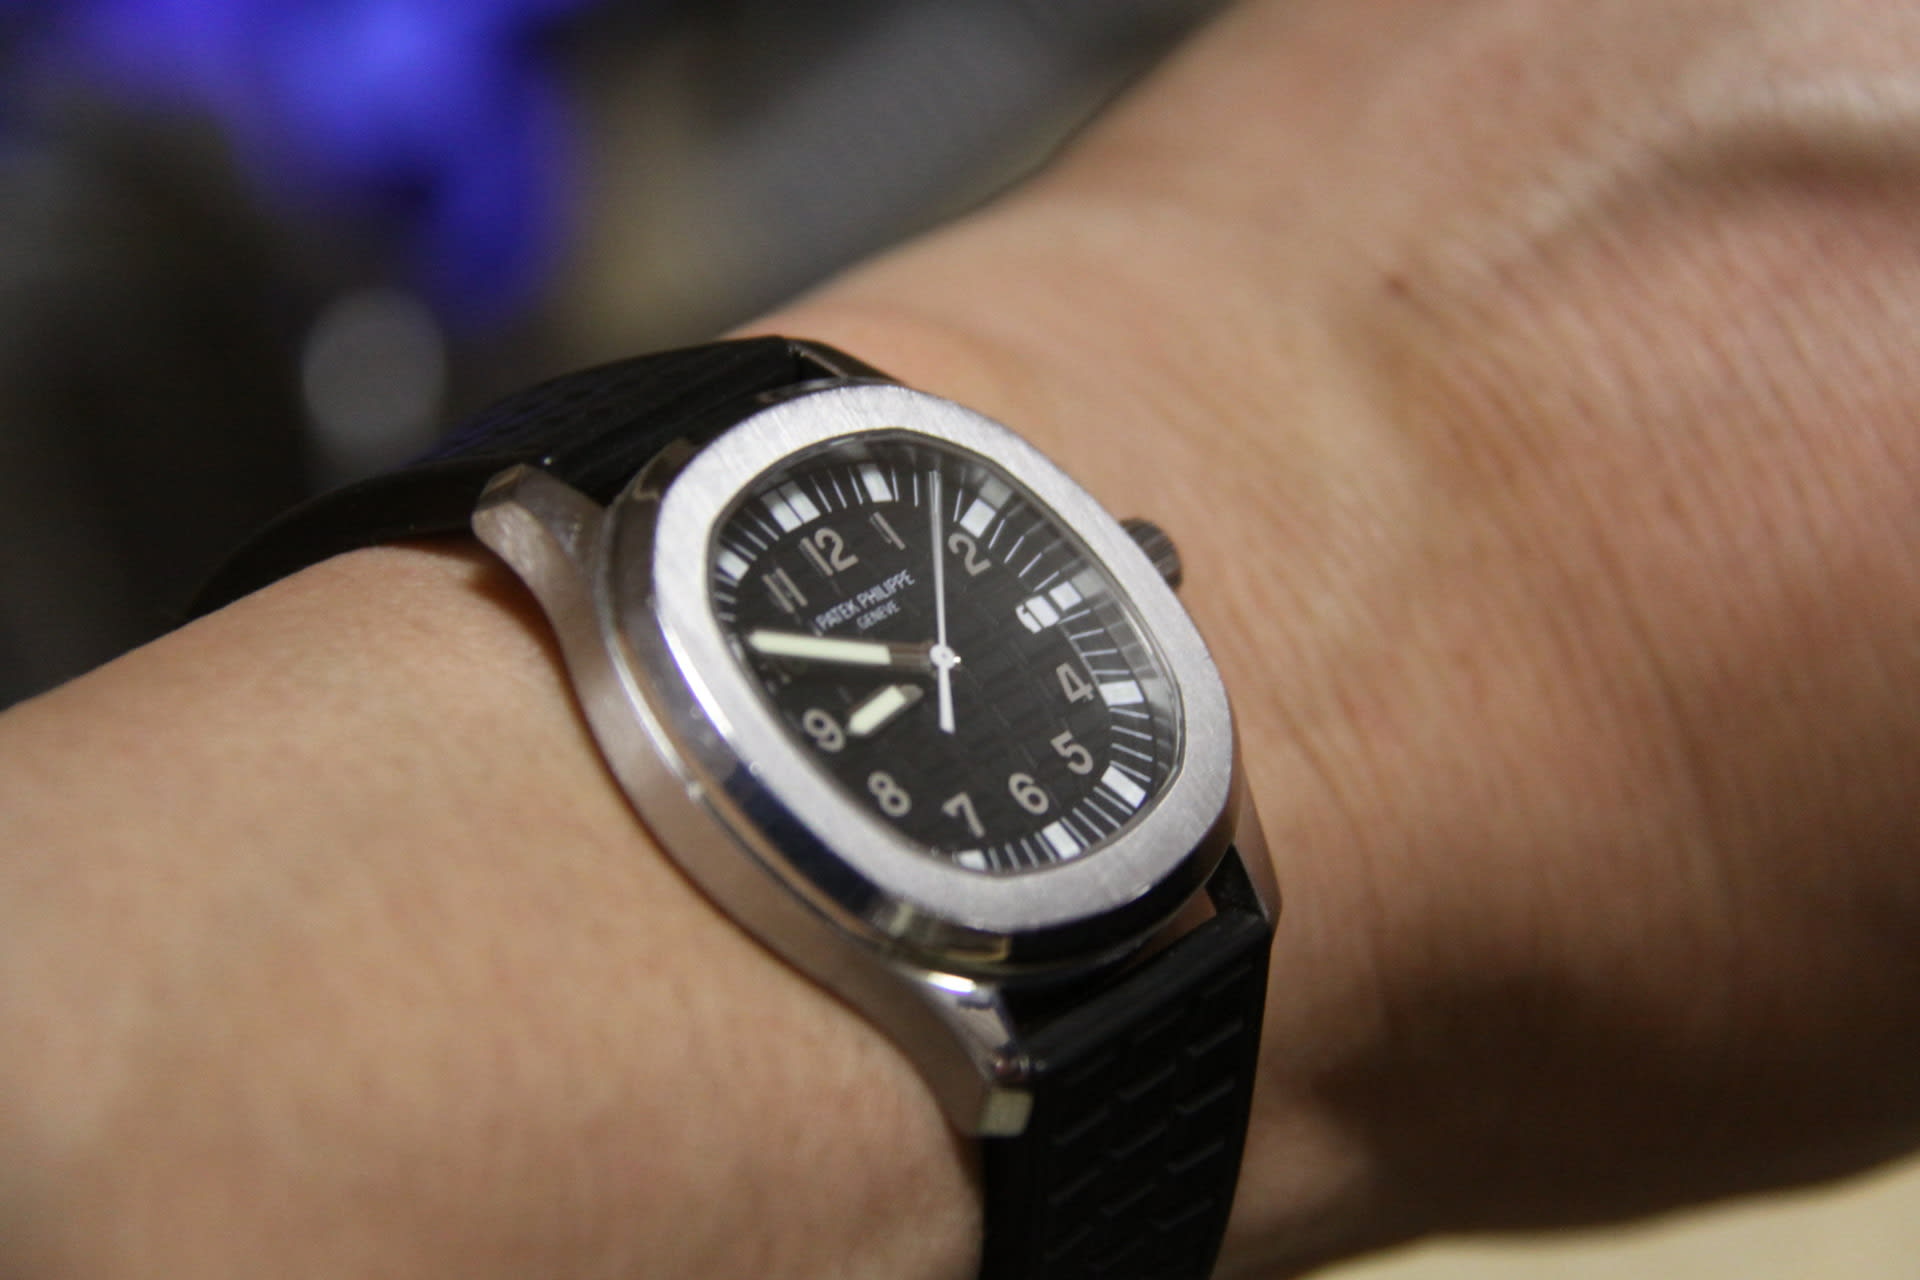 お気に入りの時計 パテックフィリップ アクアノート5064a けろんぱ 趣味のブログ